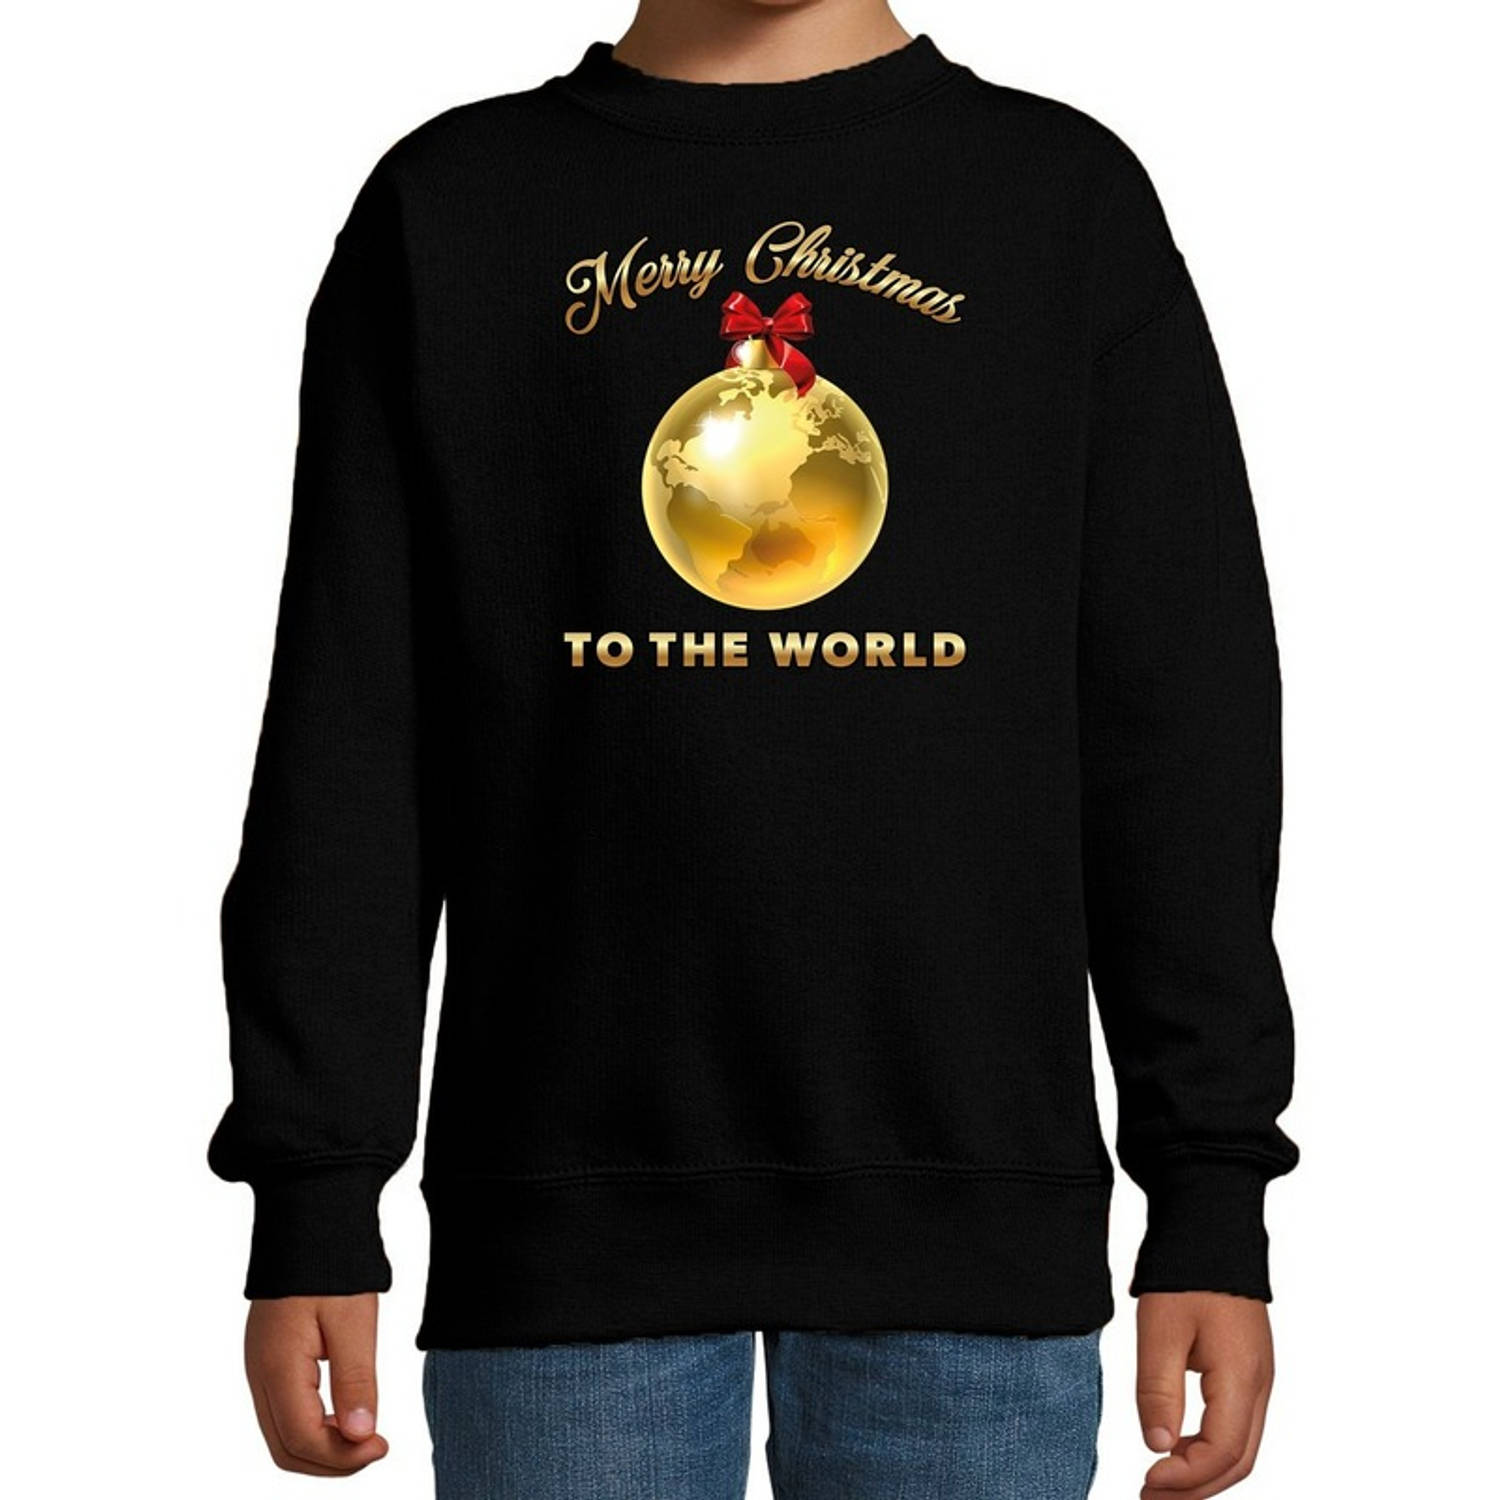 Bellatio Decorations kersttrui/sweater voor kinderen - Merry Christmas - wereld - zwart 3-4 jaar (98/104) - kerst truien